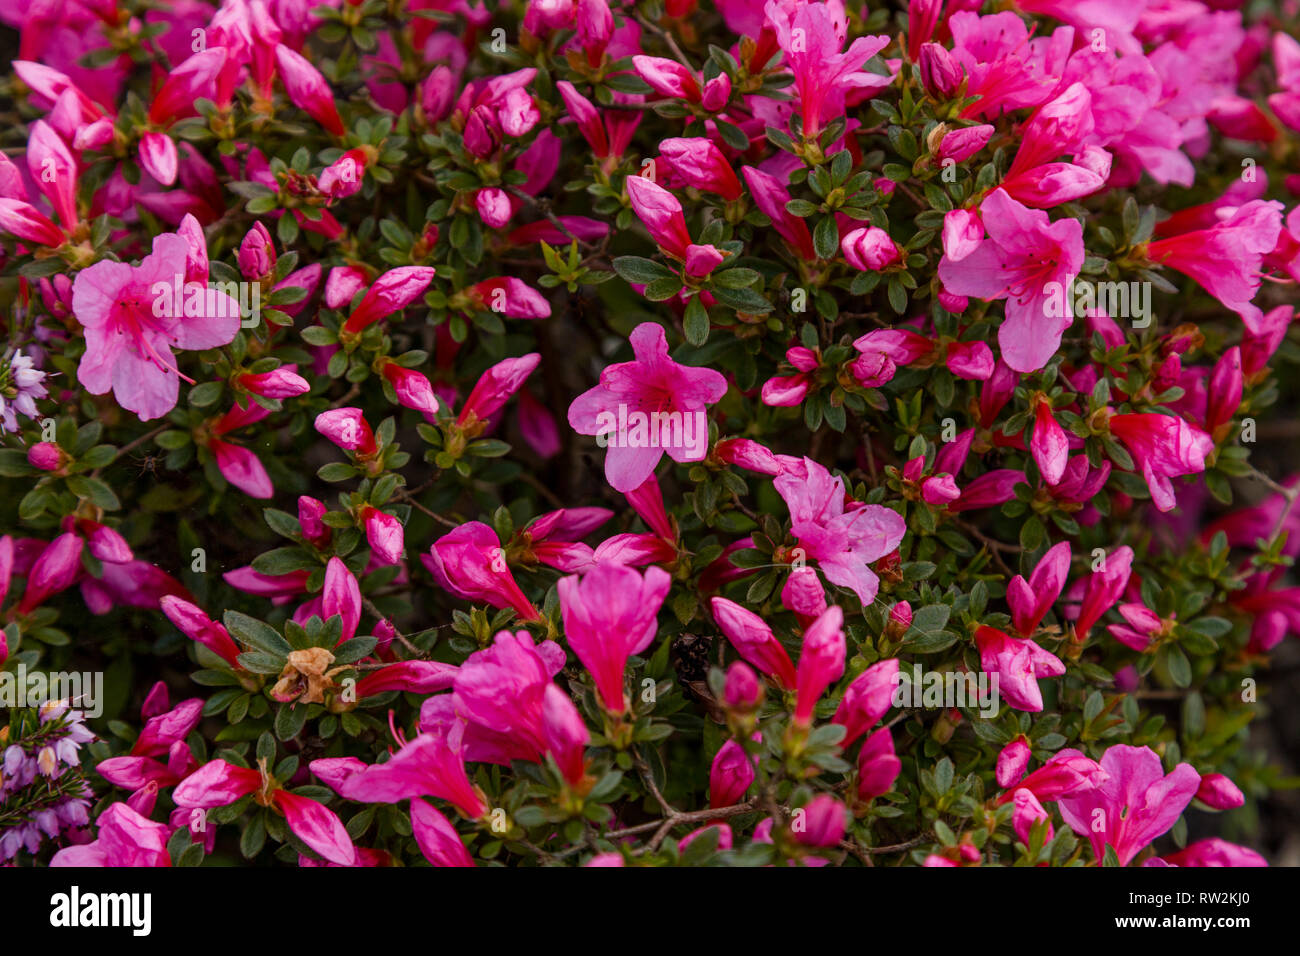 Ein tiefes Rosa Azalee Strauch in voller Blüte Stockfotografie - Alamy